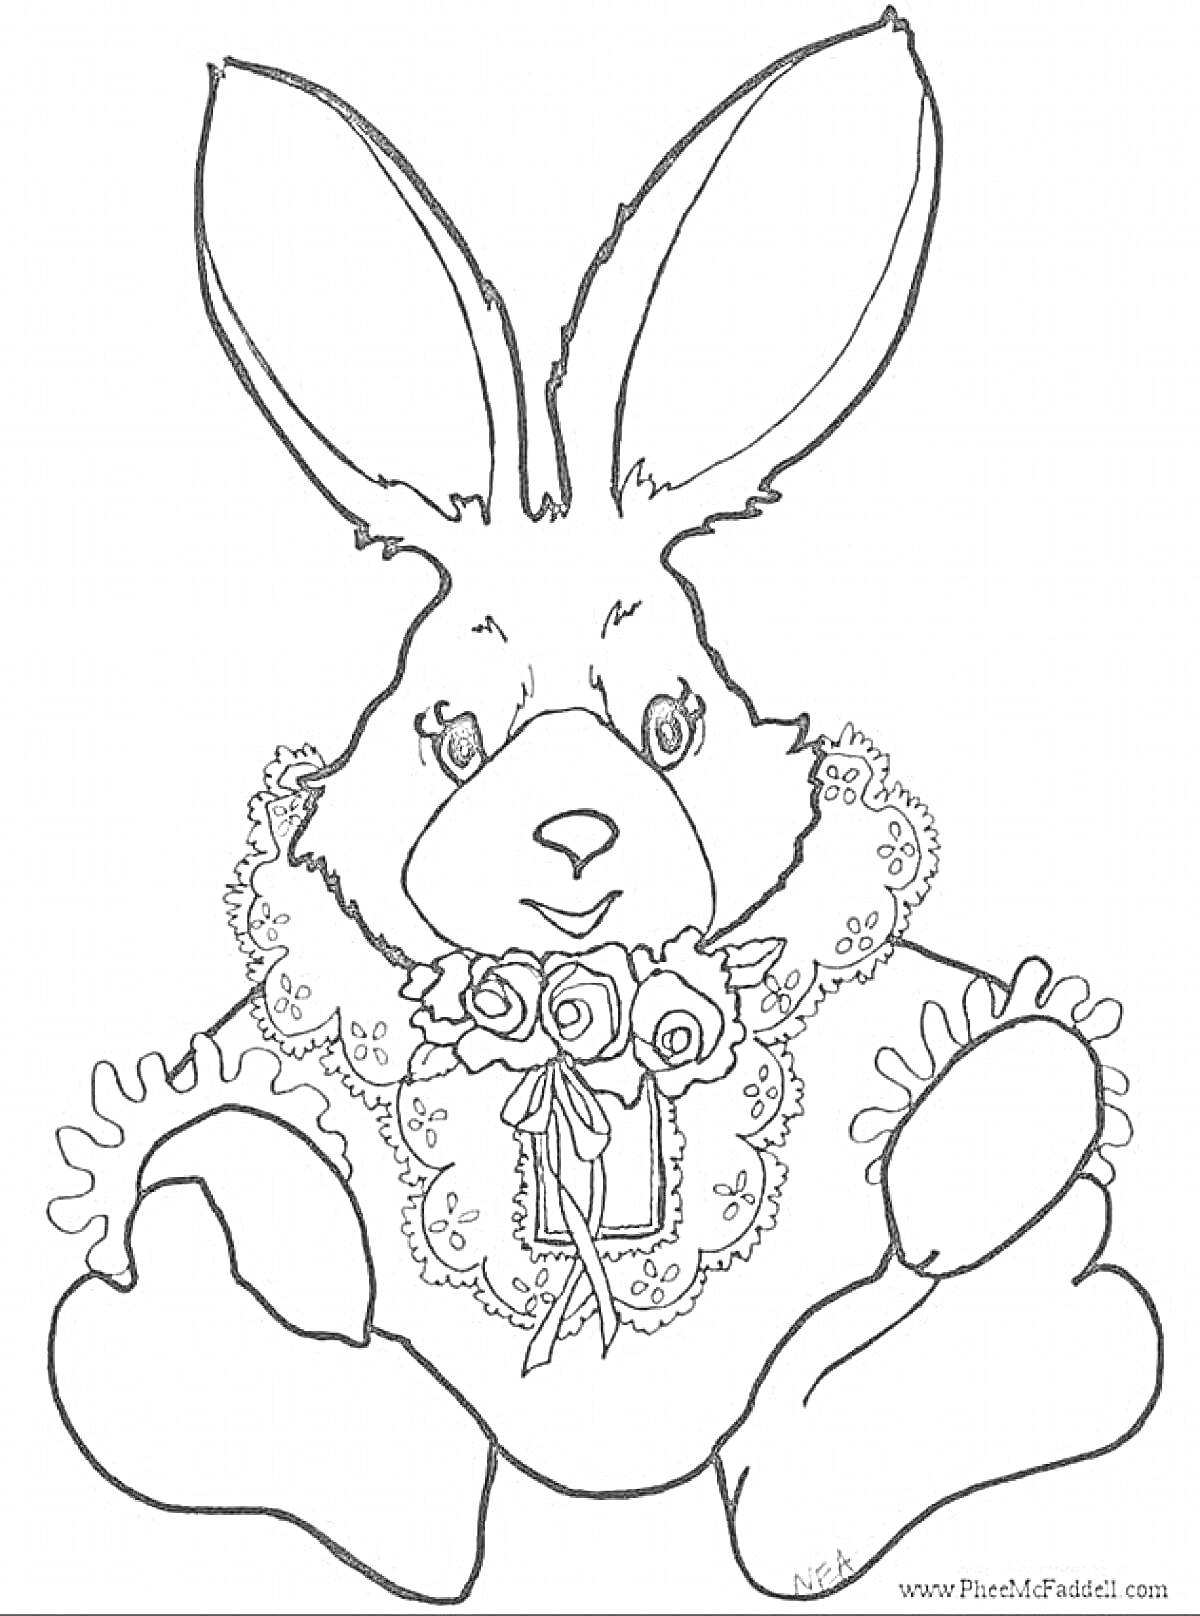 РаскраскаНовогодний кролик с ожерельем и розами